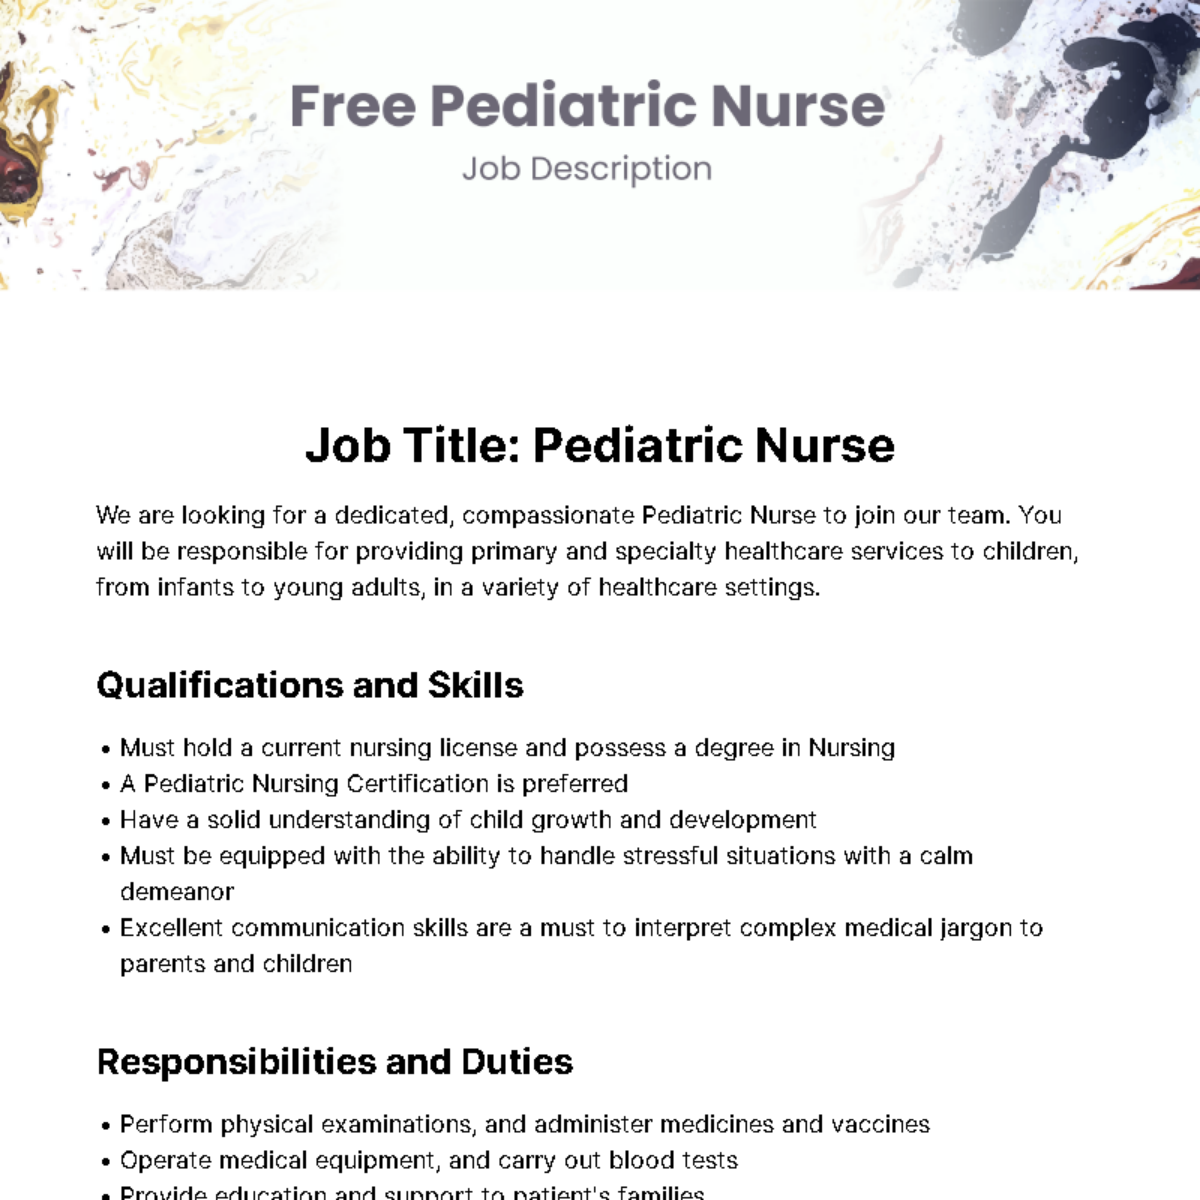 Pediatric Nurse Job Description Template